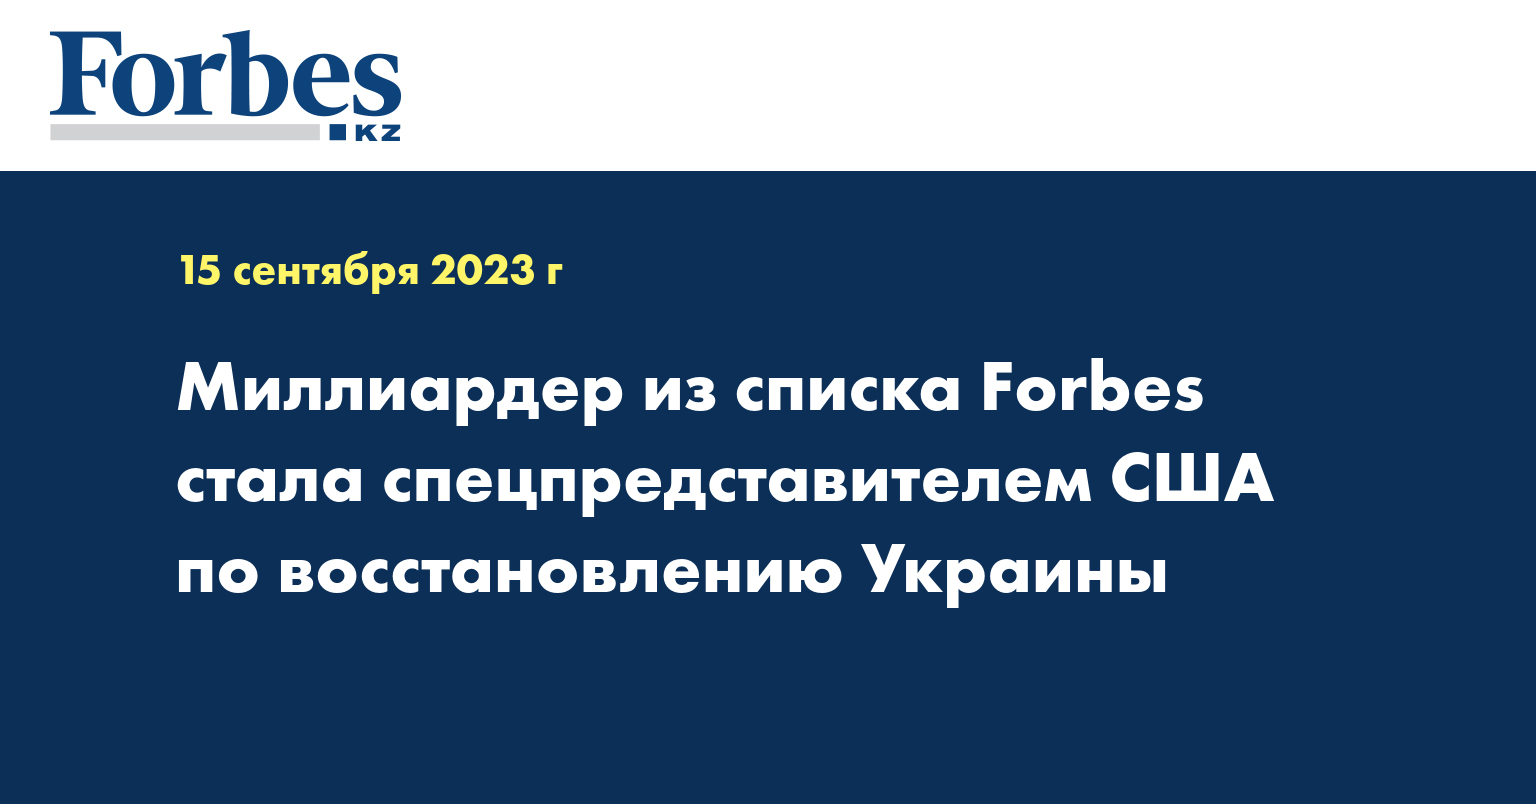 Миллиардер из списка Forbes стала спецпредставителем США по восстановлению Украины